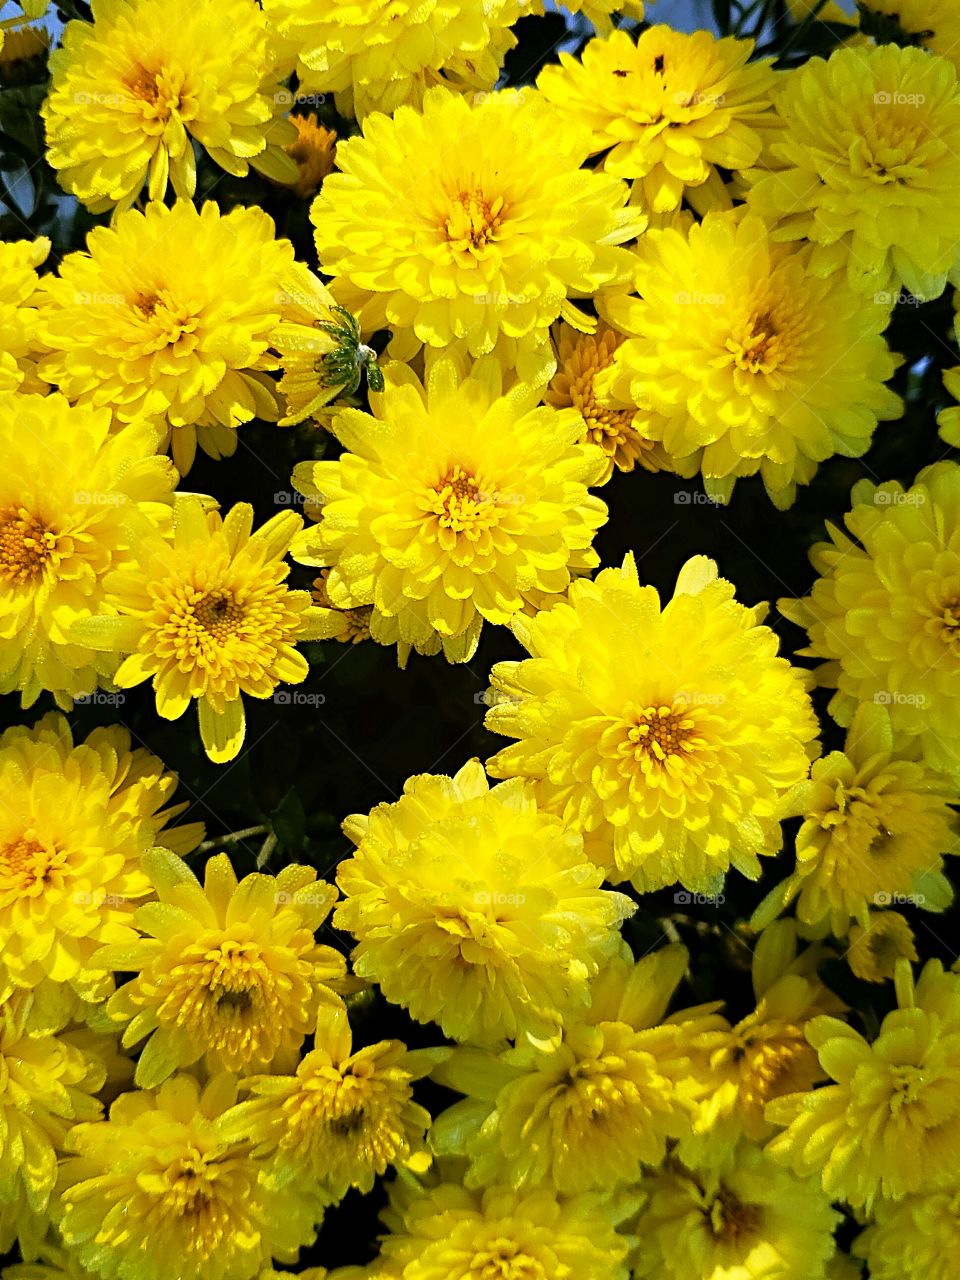 fall yellow mum flowers